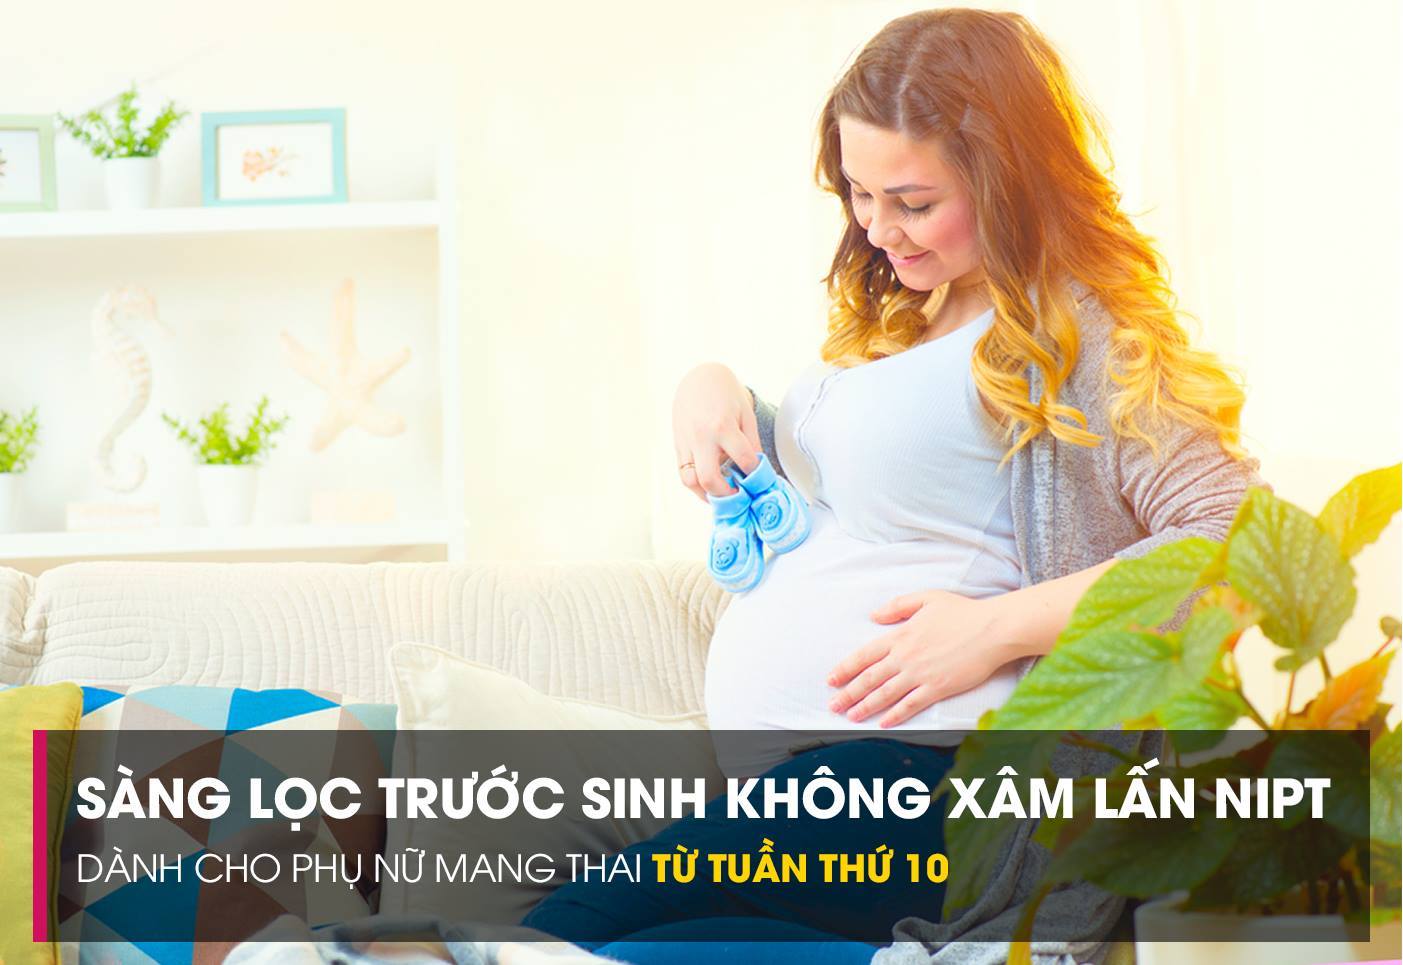 Sàng lọc trước sinh không xâm lấn (NIPT) là phương pháp an toàn thực hiện trong tuần thứ 10 thai kỳ